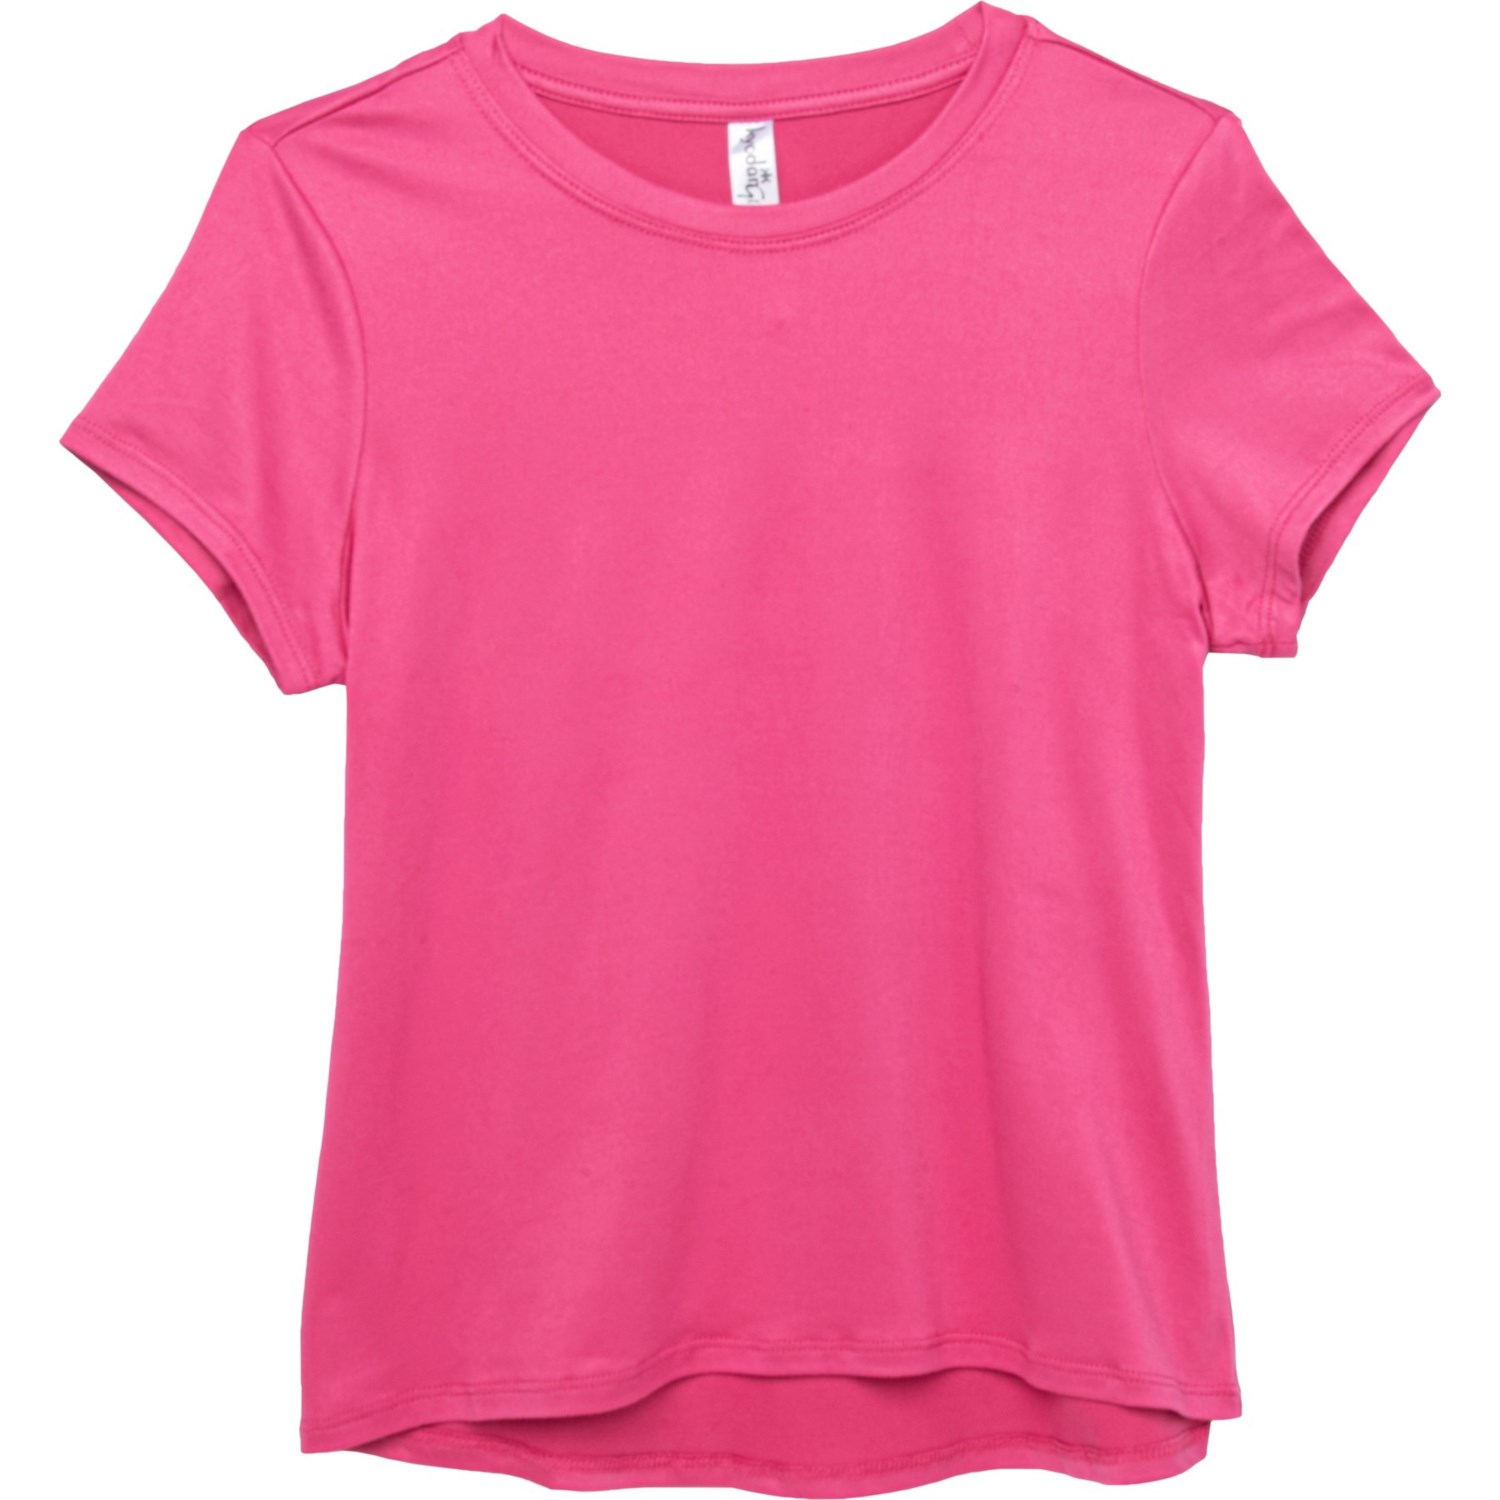 Kyodan Big Girls Moss Jersey T-Shirt - Short Sleeve - Save 60%